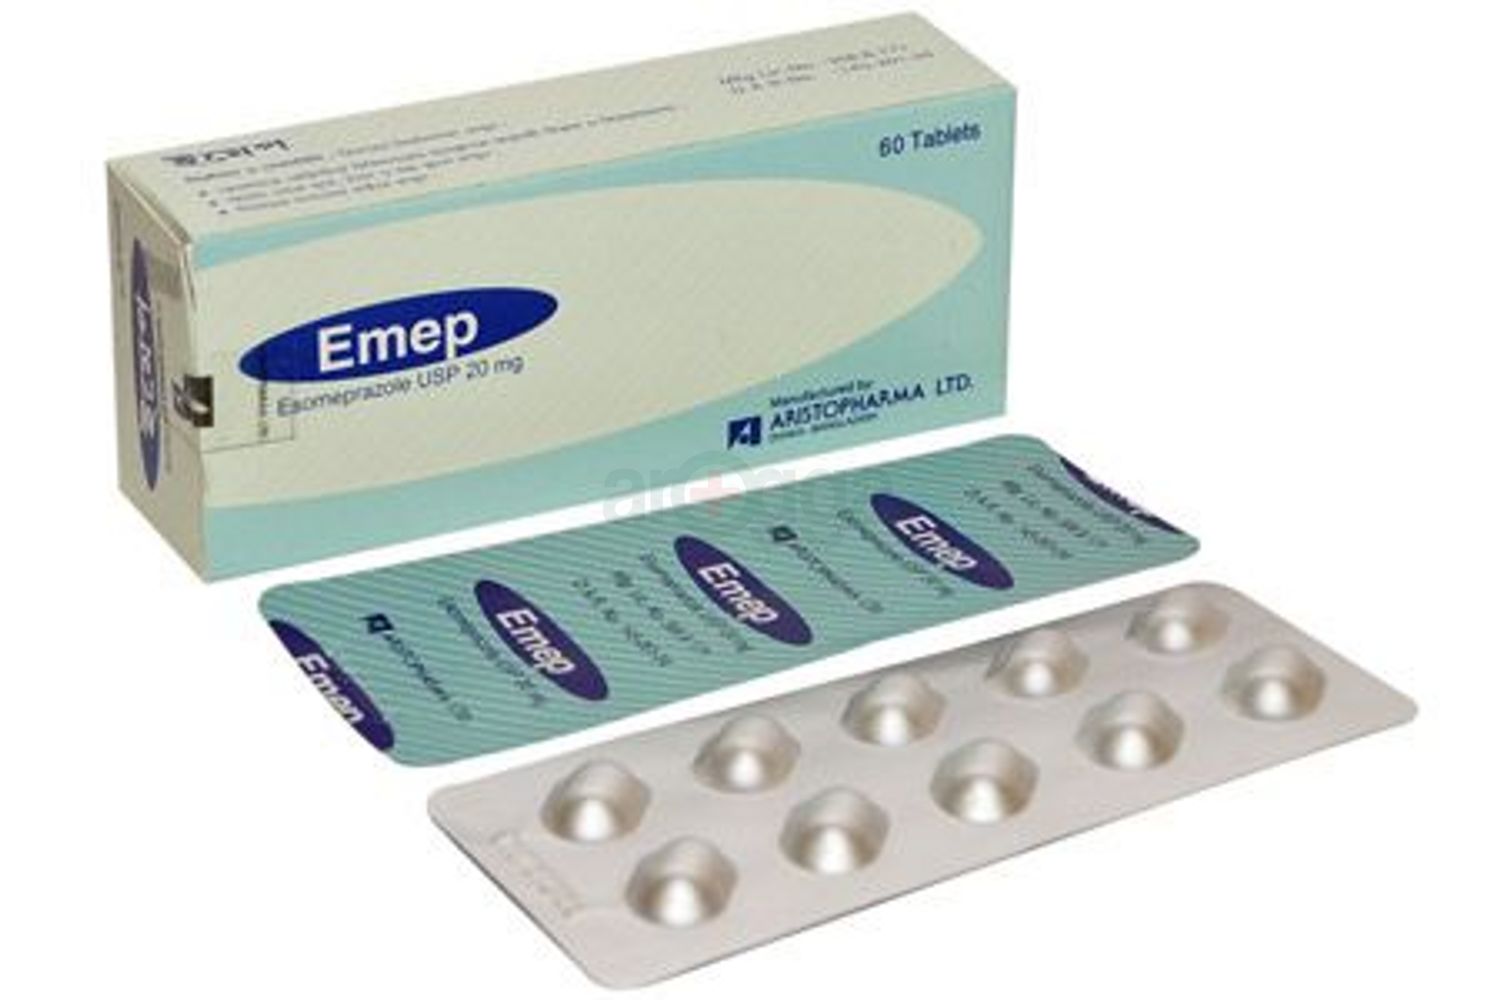 Emep 20 Tablet